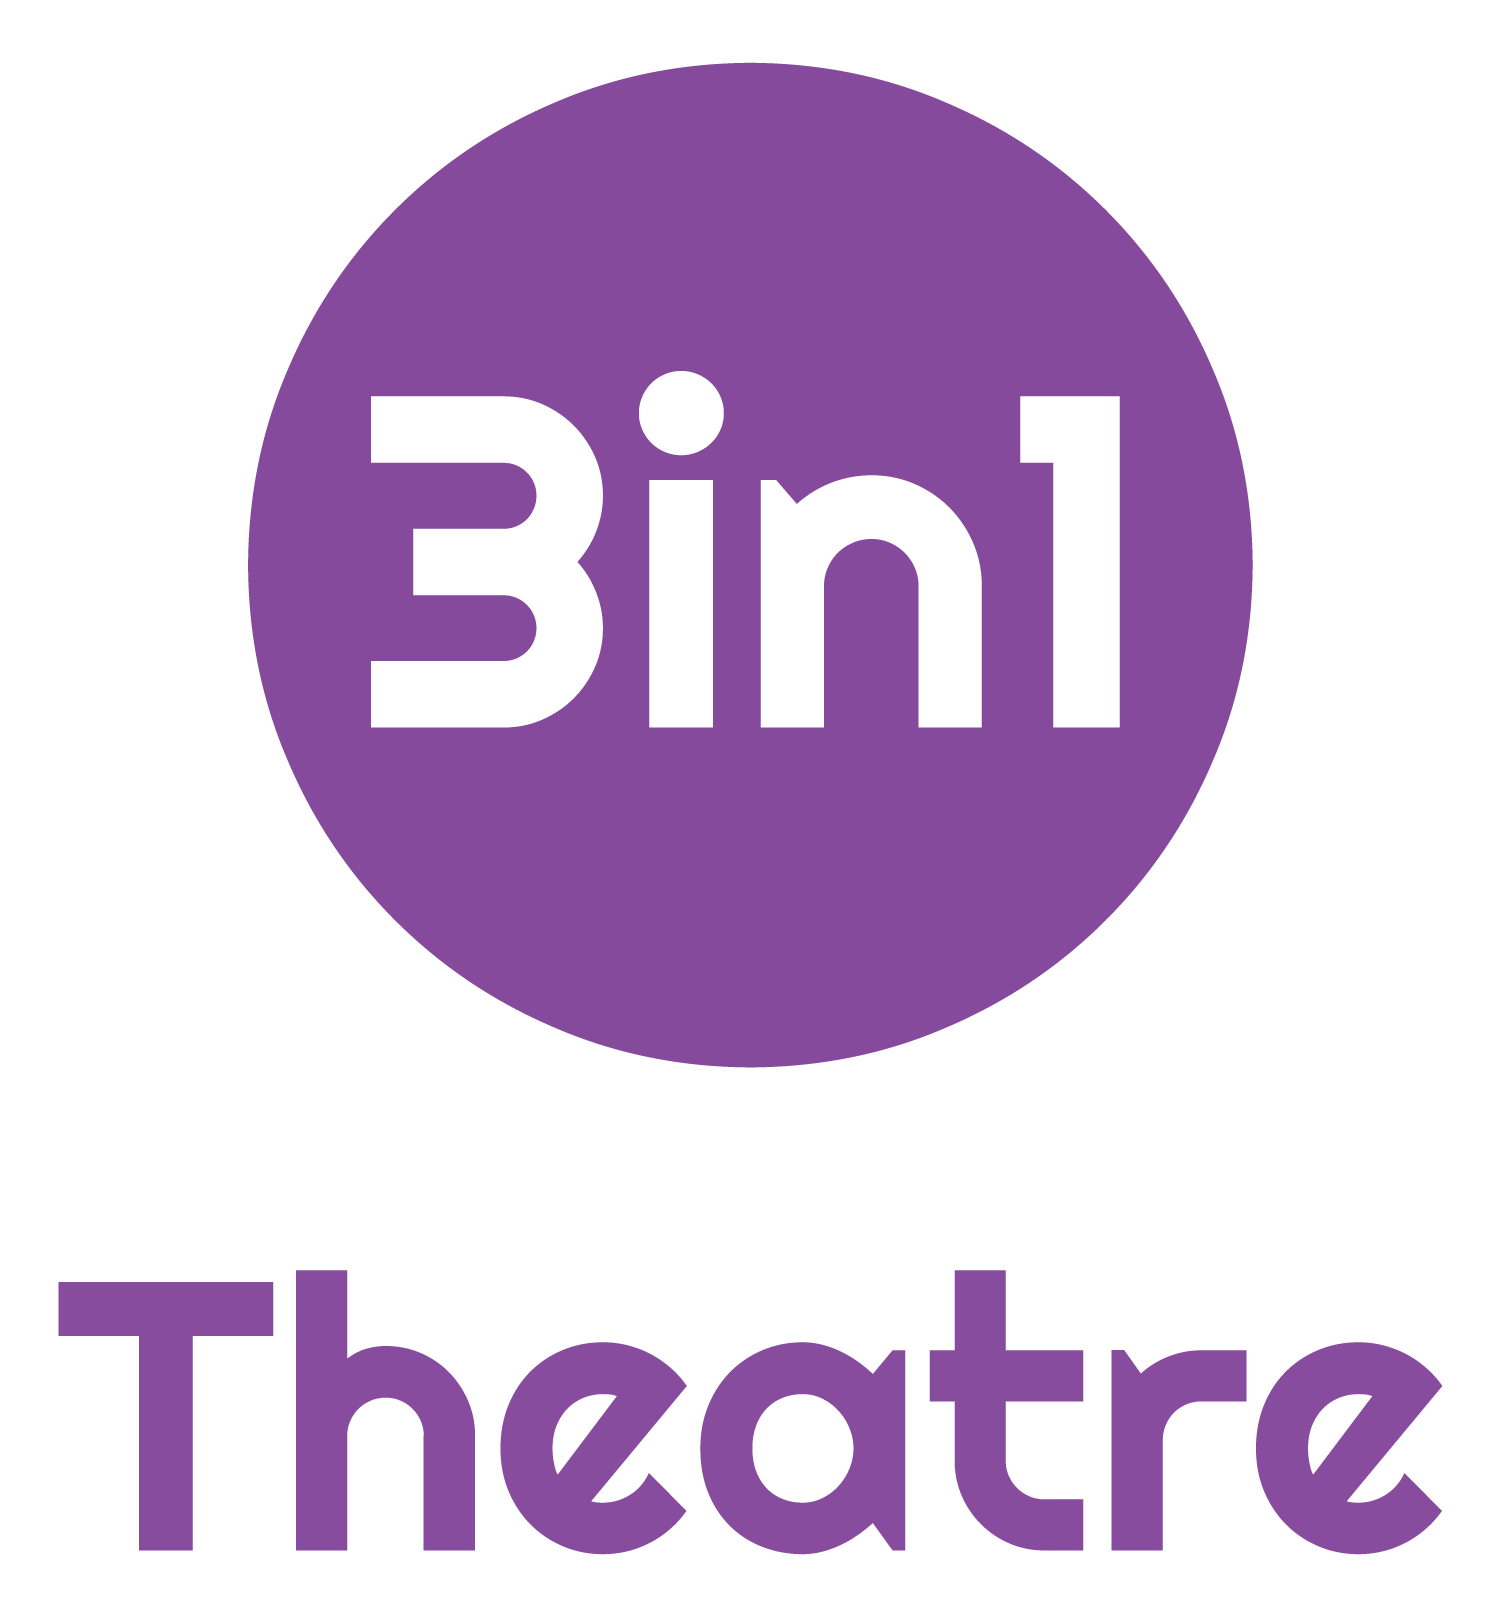 3in1 Theatre